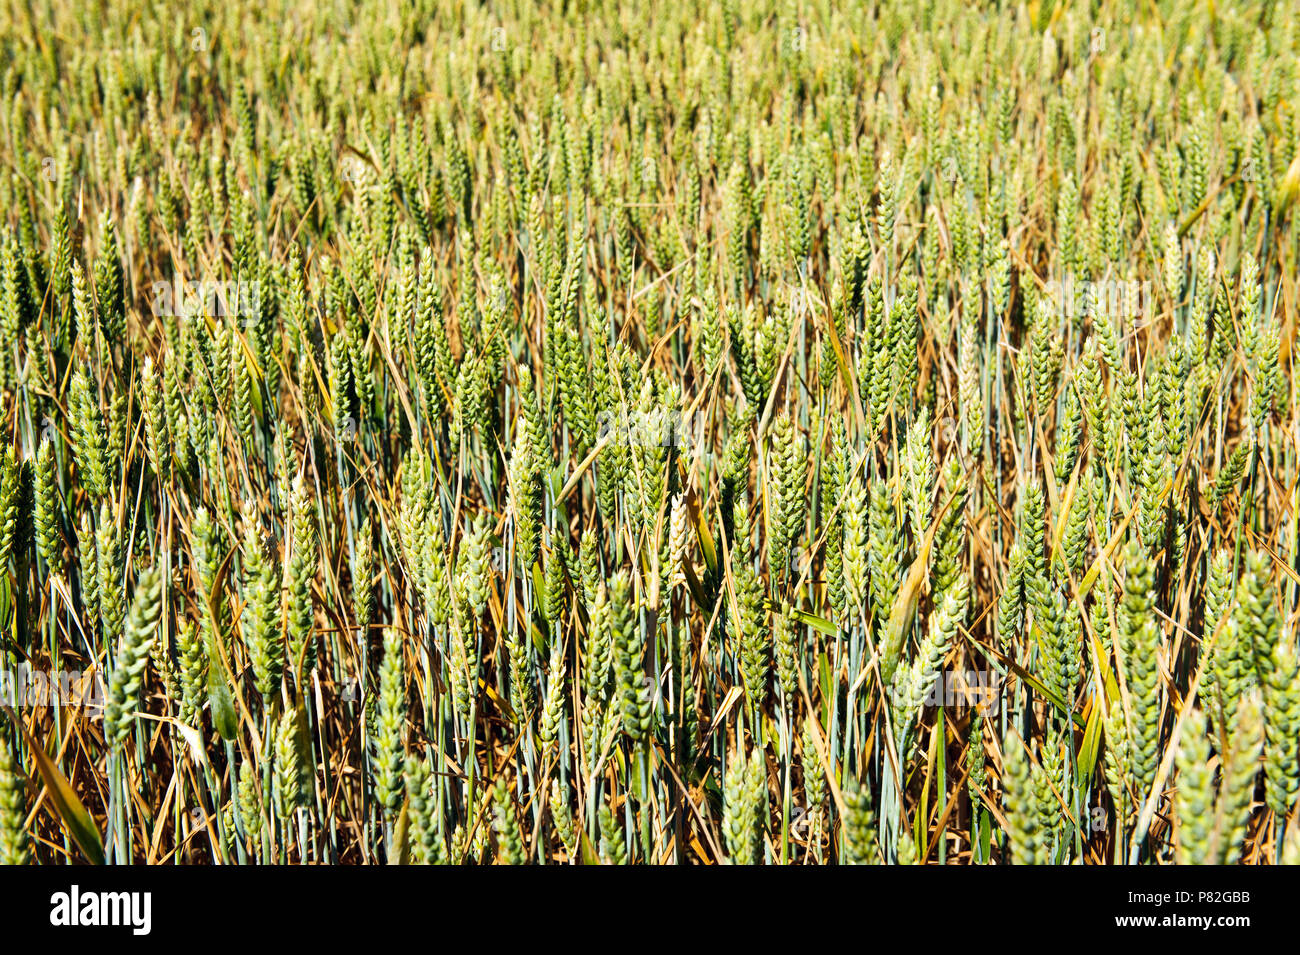 Die grünen Ähren von Getreide auf dem Feld an einem sonnigen Tag Stockfoto